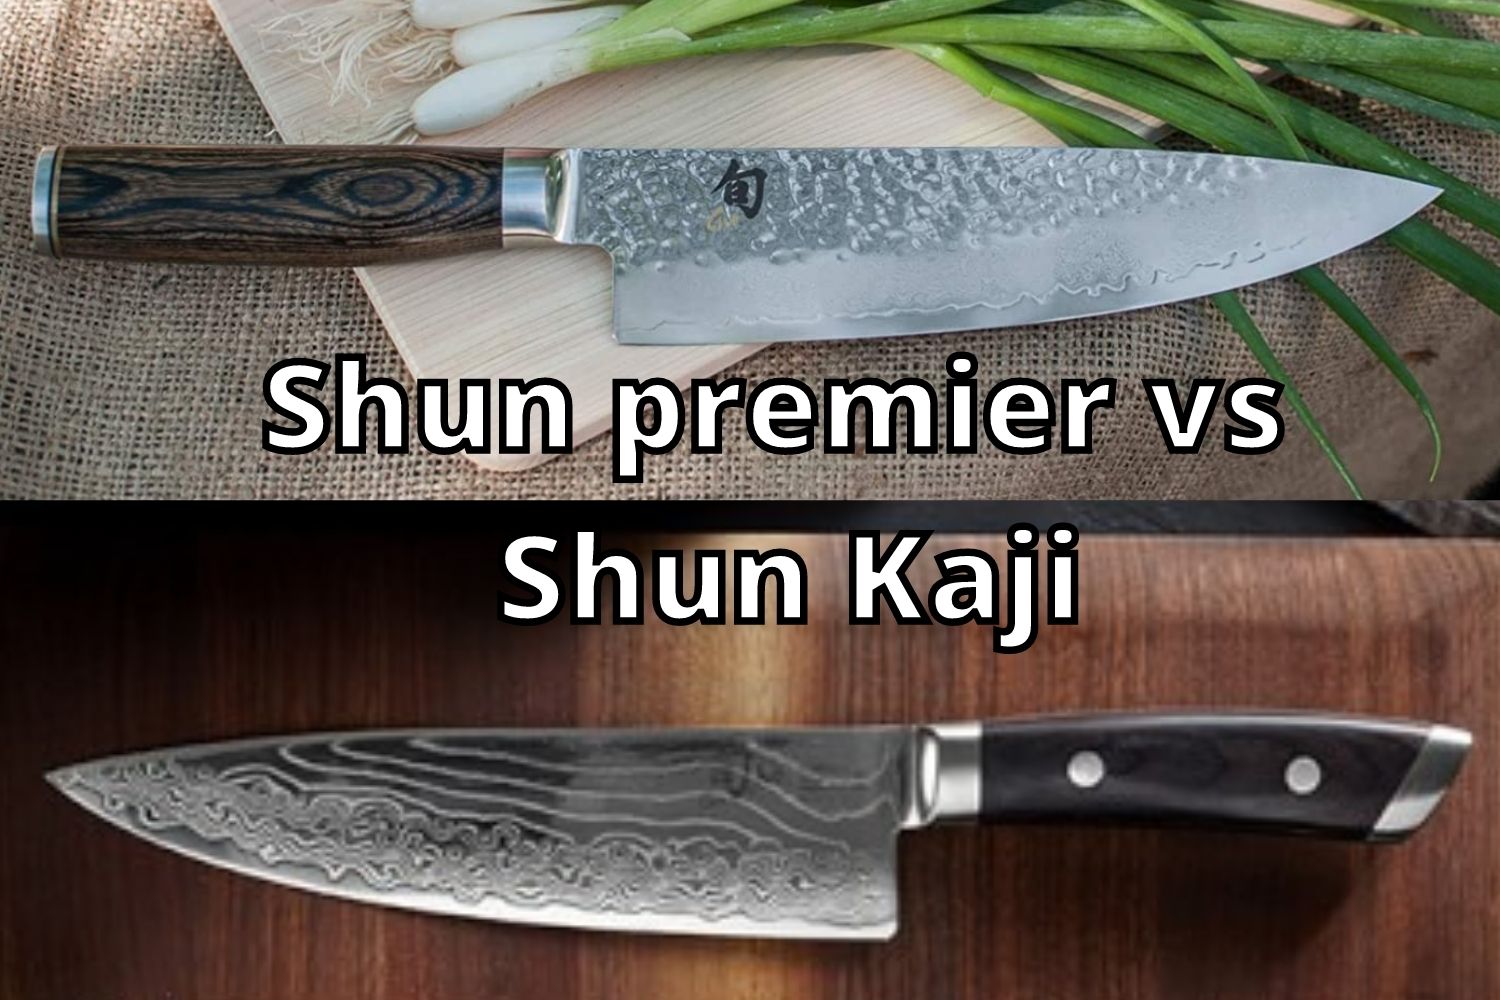 Shun premier vs Kaji